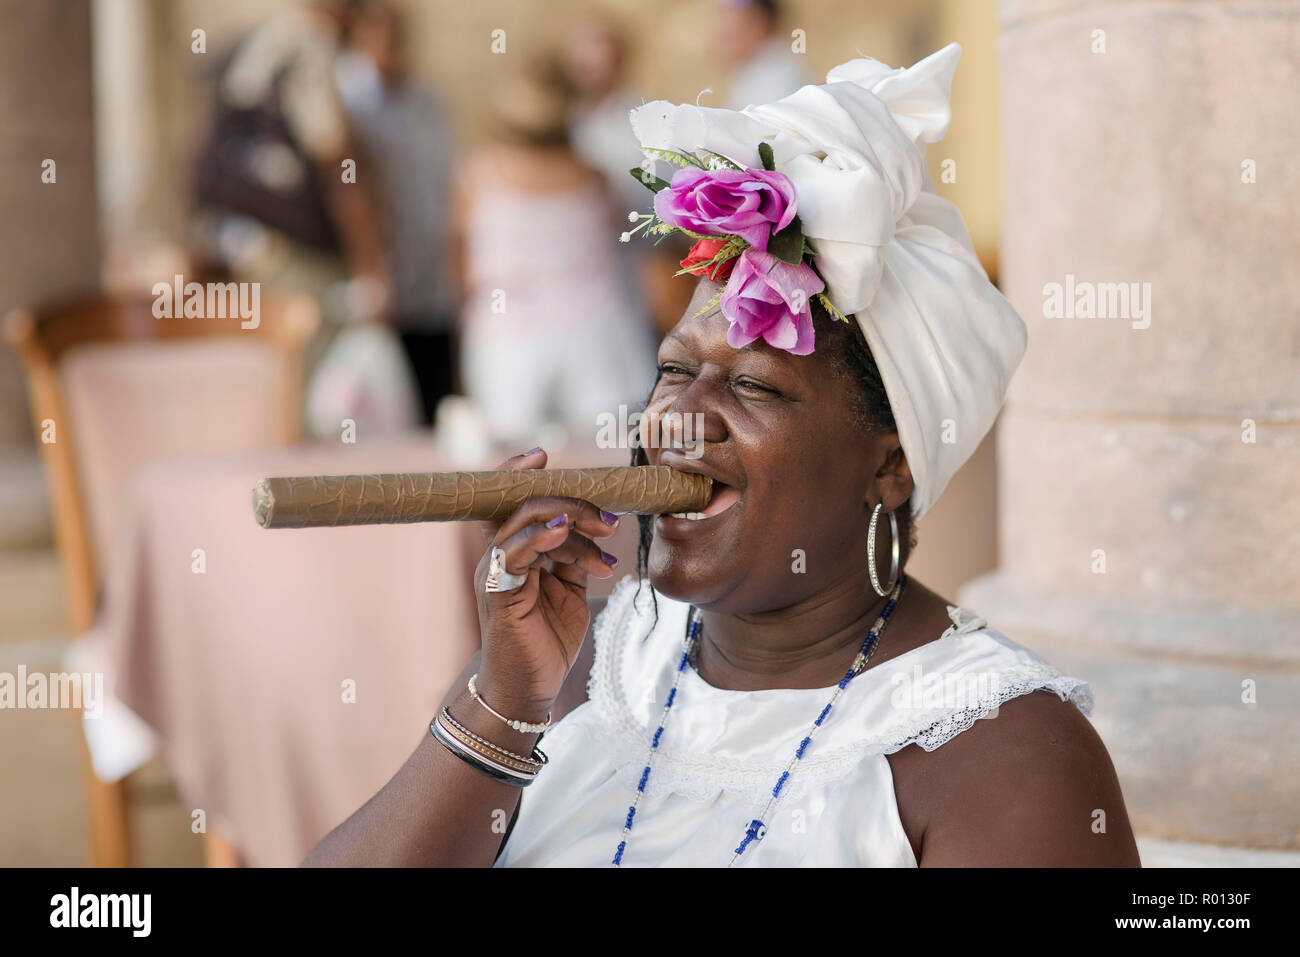 Teresa, un fortunte teller, pone con un gigante di sigaro cubano e un sorriso contagioso in una plaza a l'Avana. Foto Stock